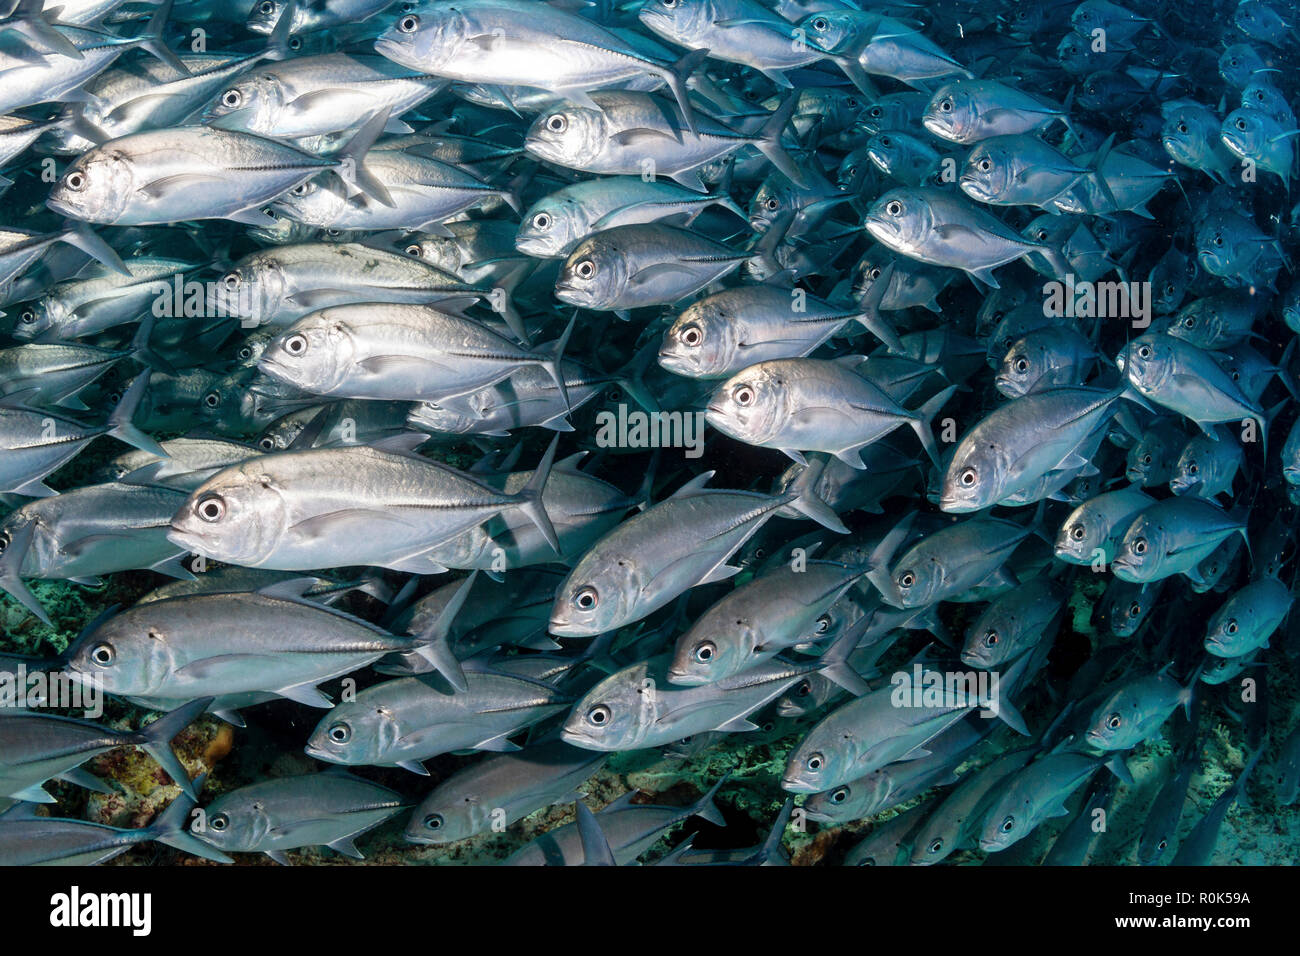 Schooling jack fish in the waters of Sipadan, Malaysia. Stock Photo